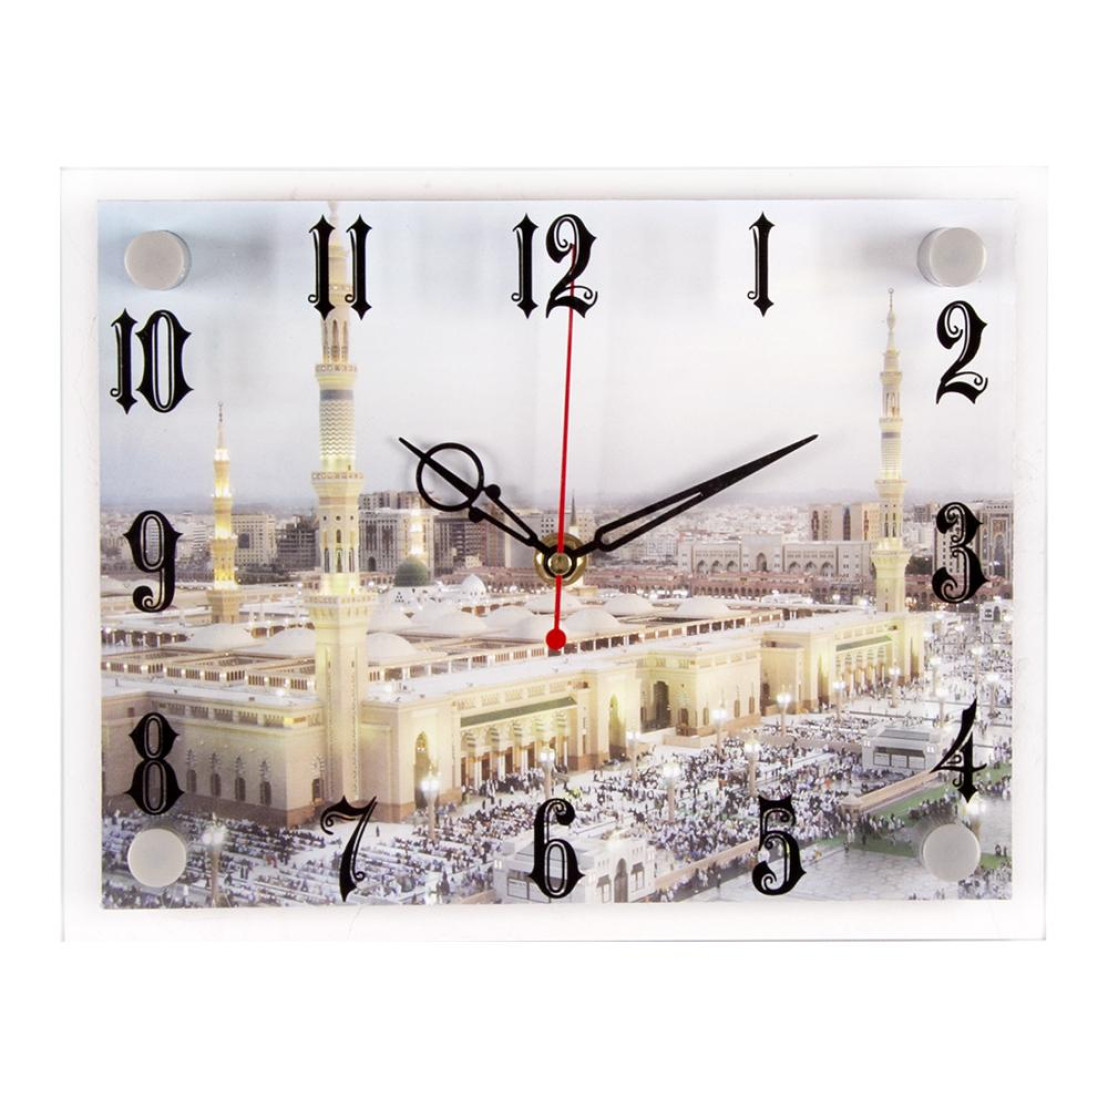 Часы с мечетью настенные. Оригинал часы настенные для мечети. Настенные электронные часы с мечетью 21 век. 21 Век 2026-995.